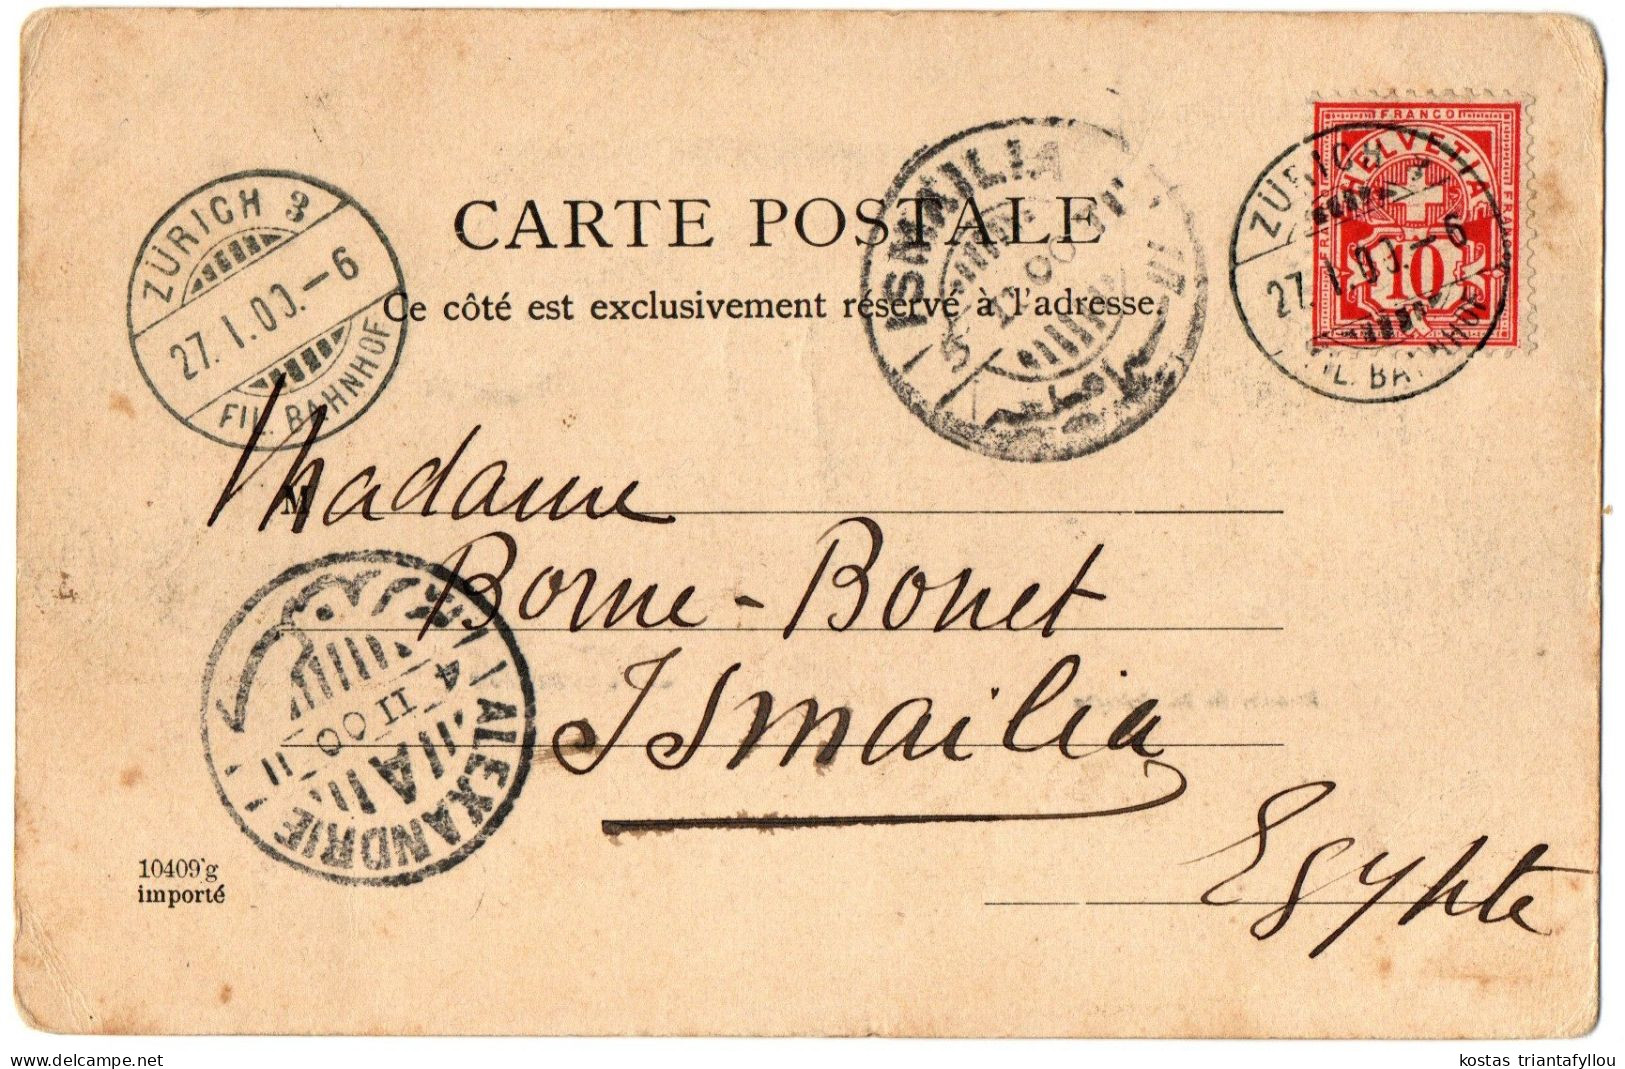 1.8.8 FRANCE, MARSEILLE, BASSIN DE LA JOLIETTE, 1900, POSTCARD - Joliette, Port Area